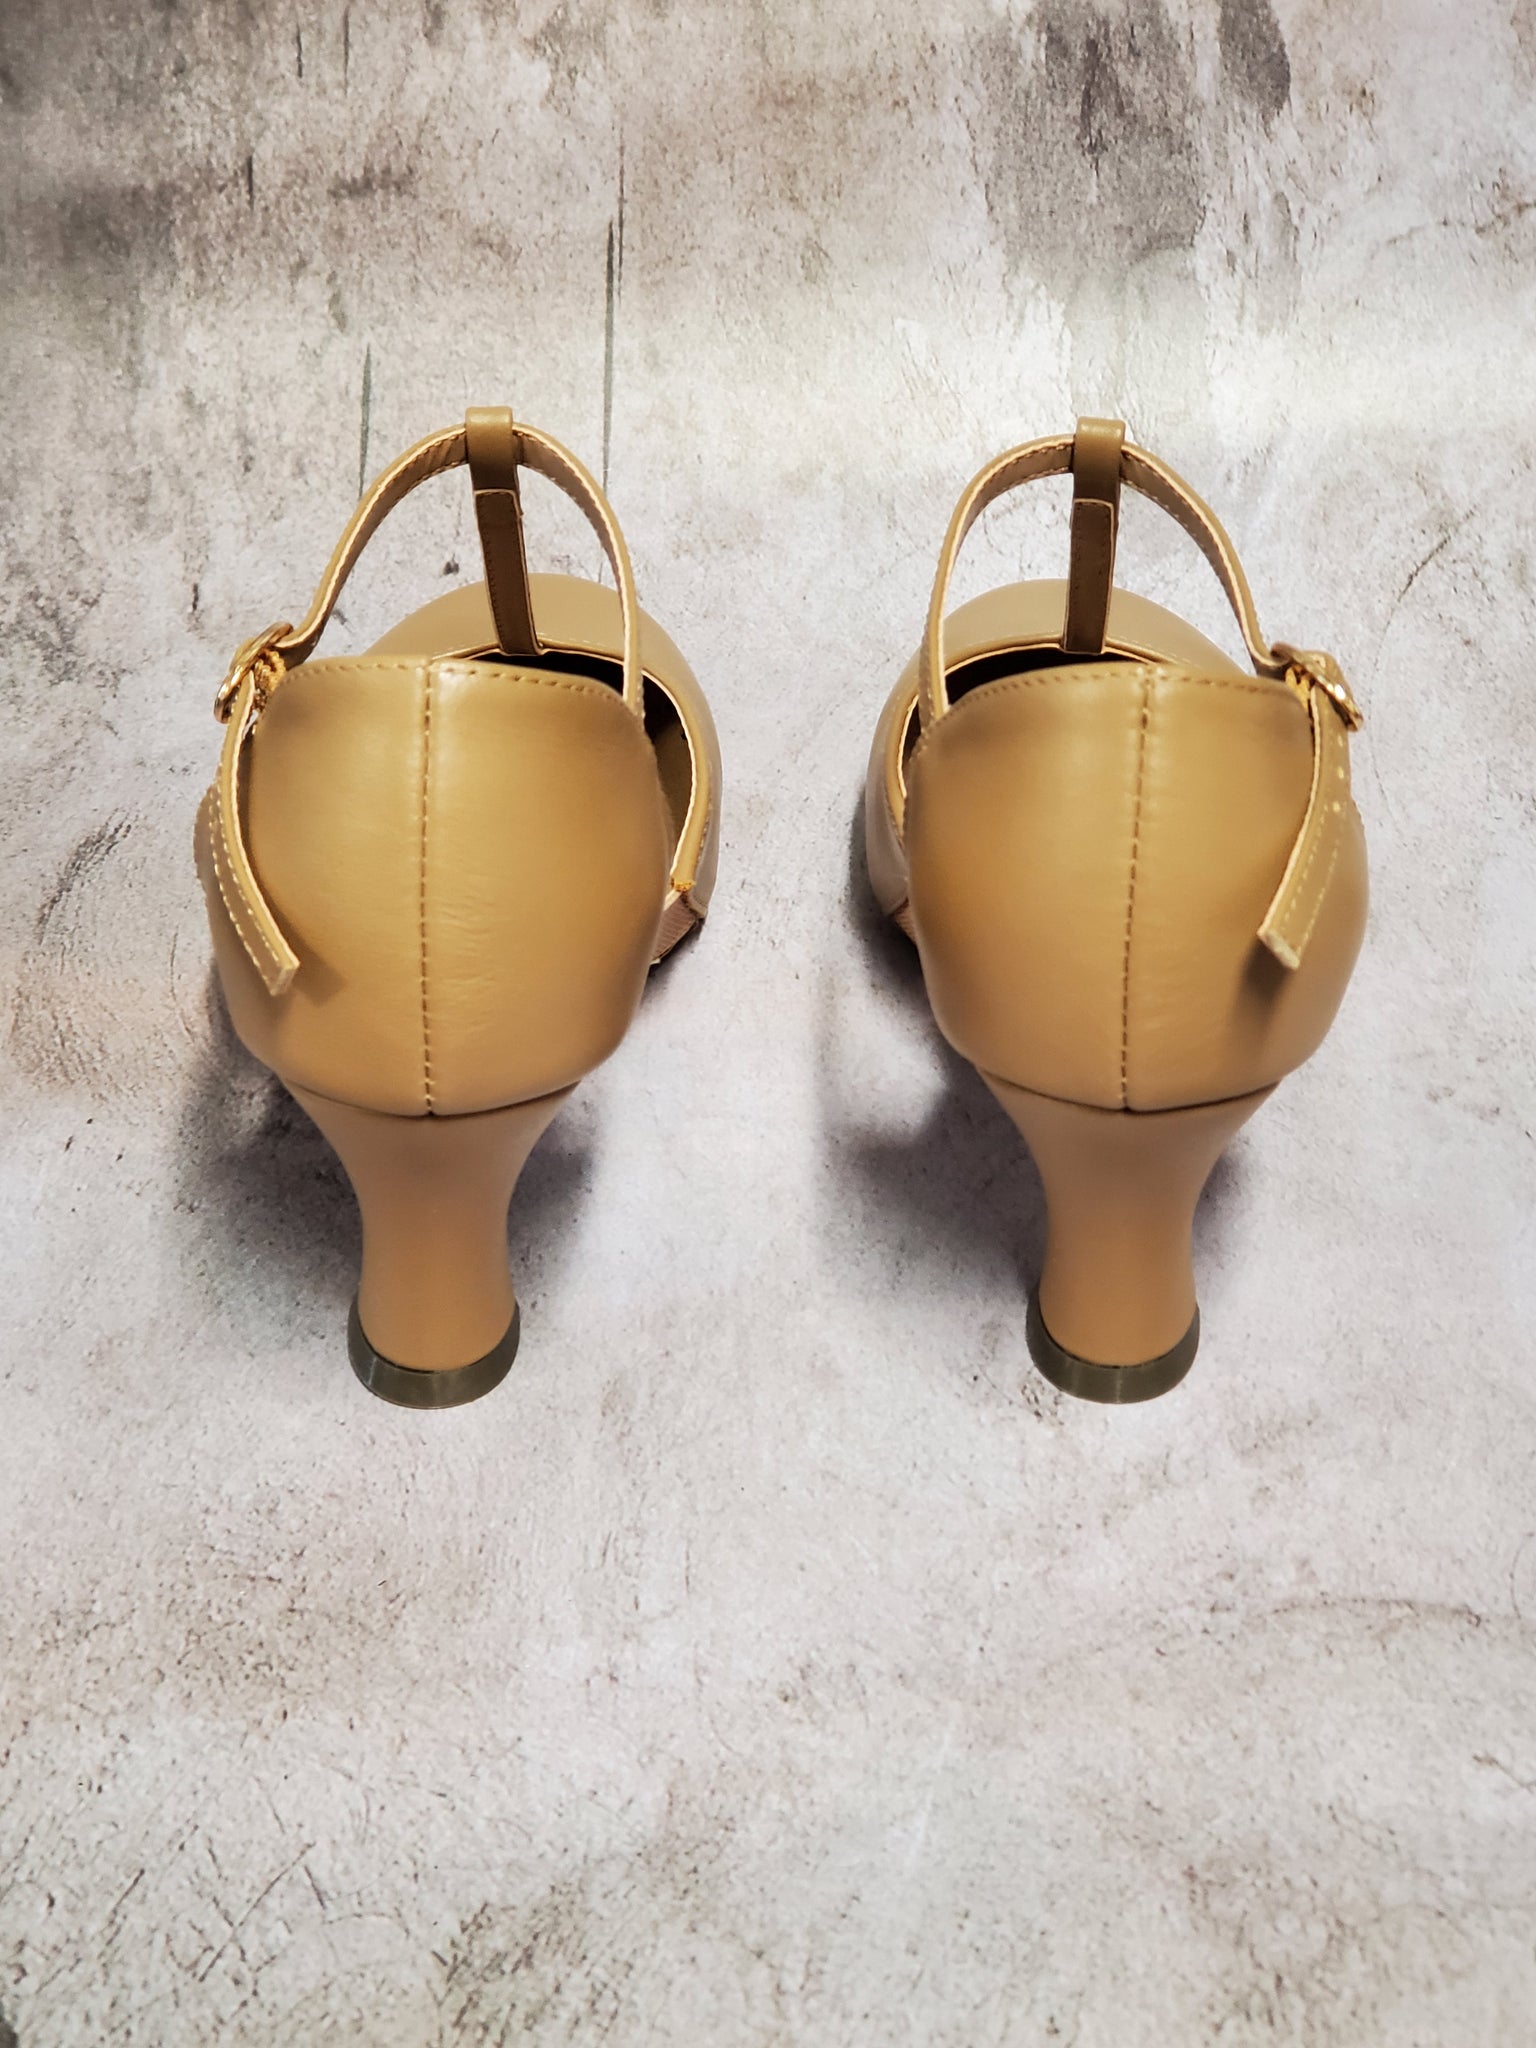 Ladies Split Flex Leather Character Shoes, Black – BLOCH Dance US